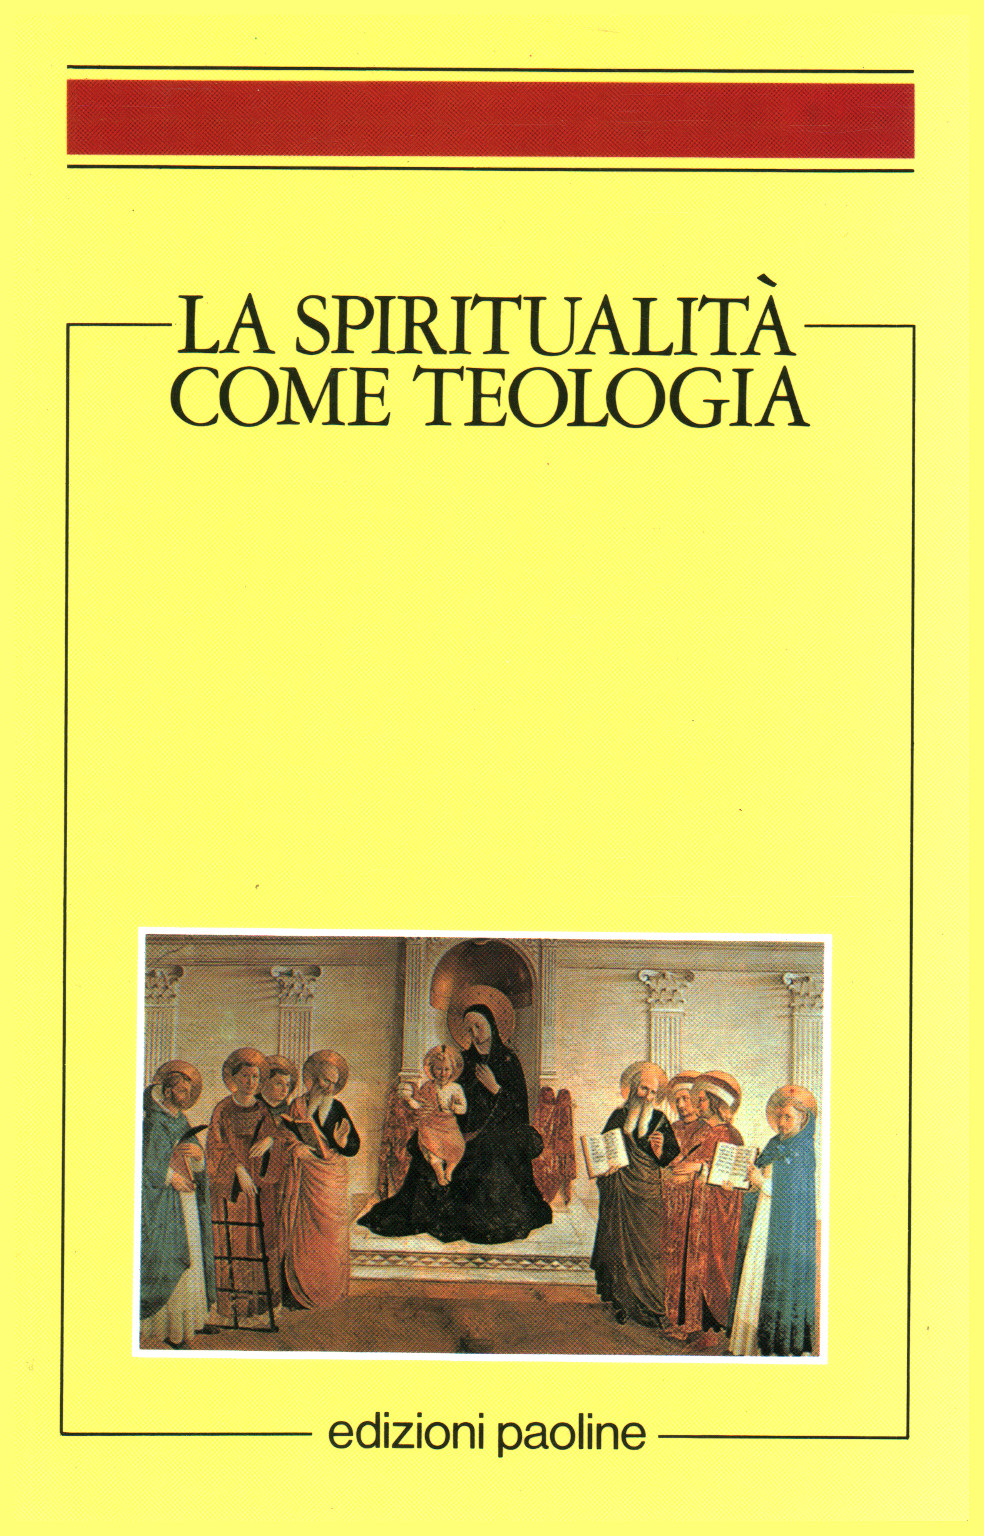 La espiritualidad en la teología, s.una.